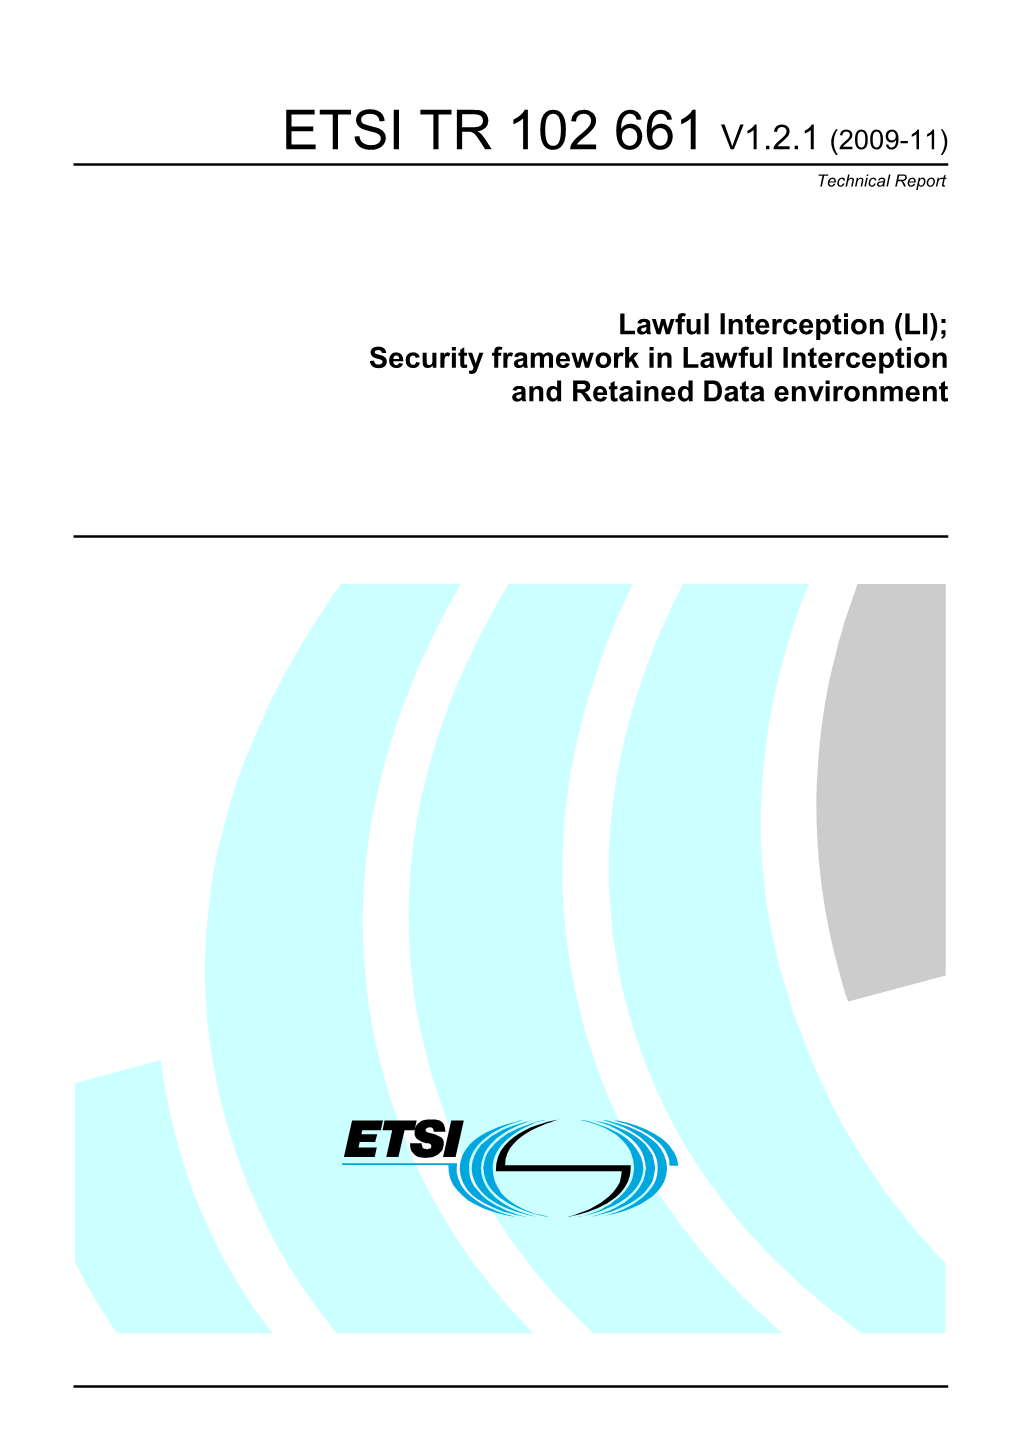 ETSI TR 102 661 V1.2.1 (2009-11) Technical Report